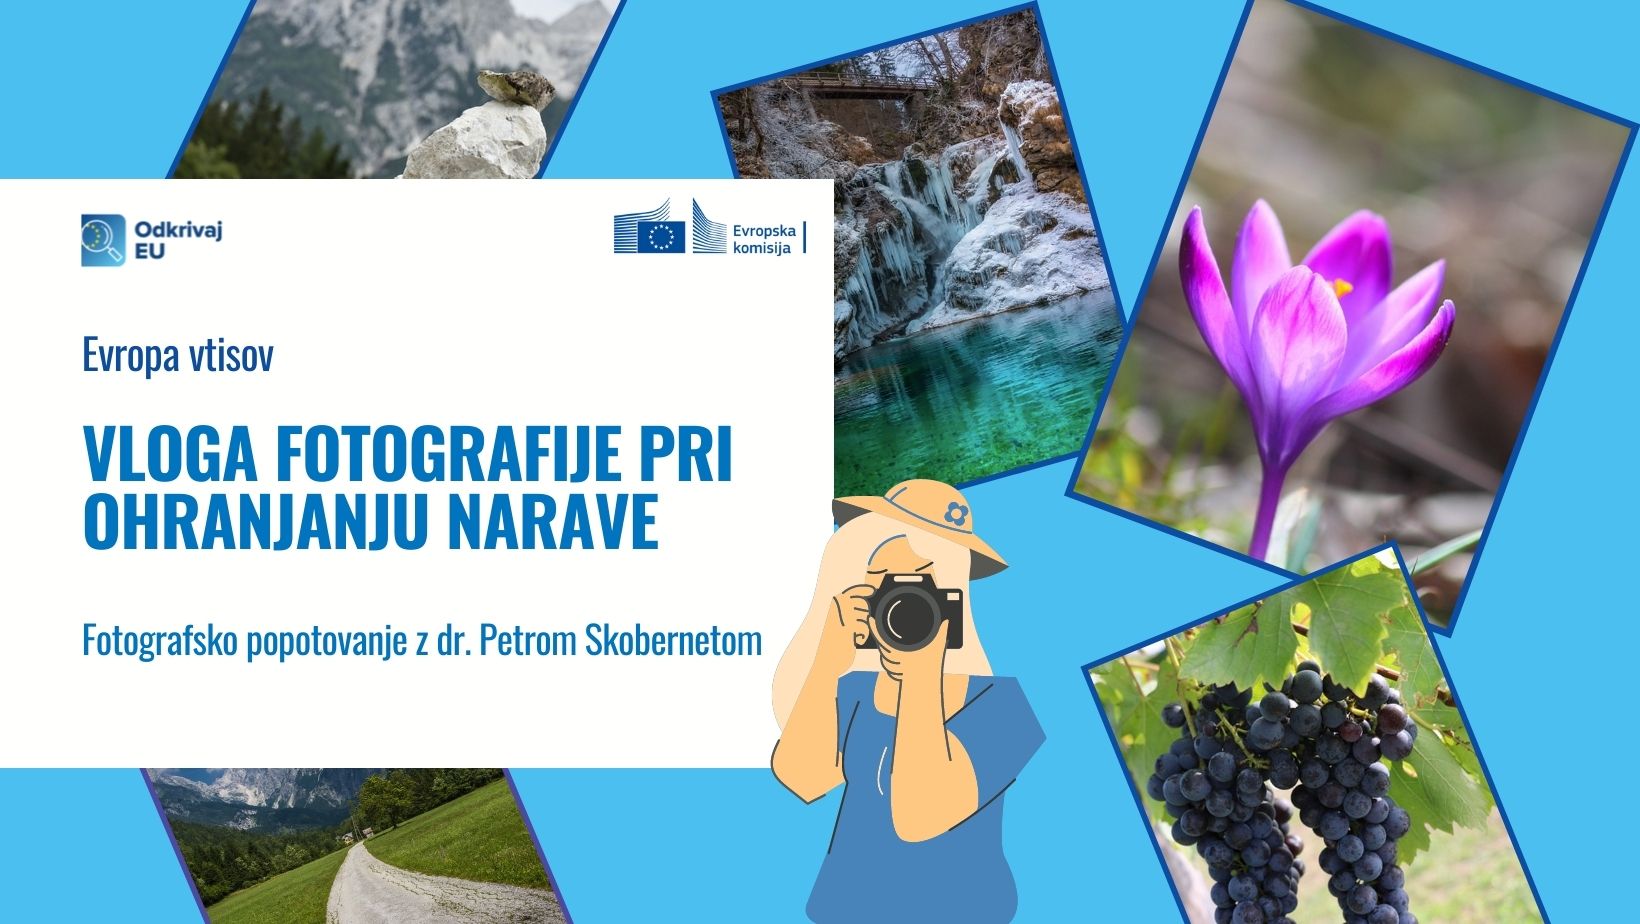 Odkrivaj EU: Vloga fotografije pri ohranjanju narave